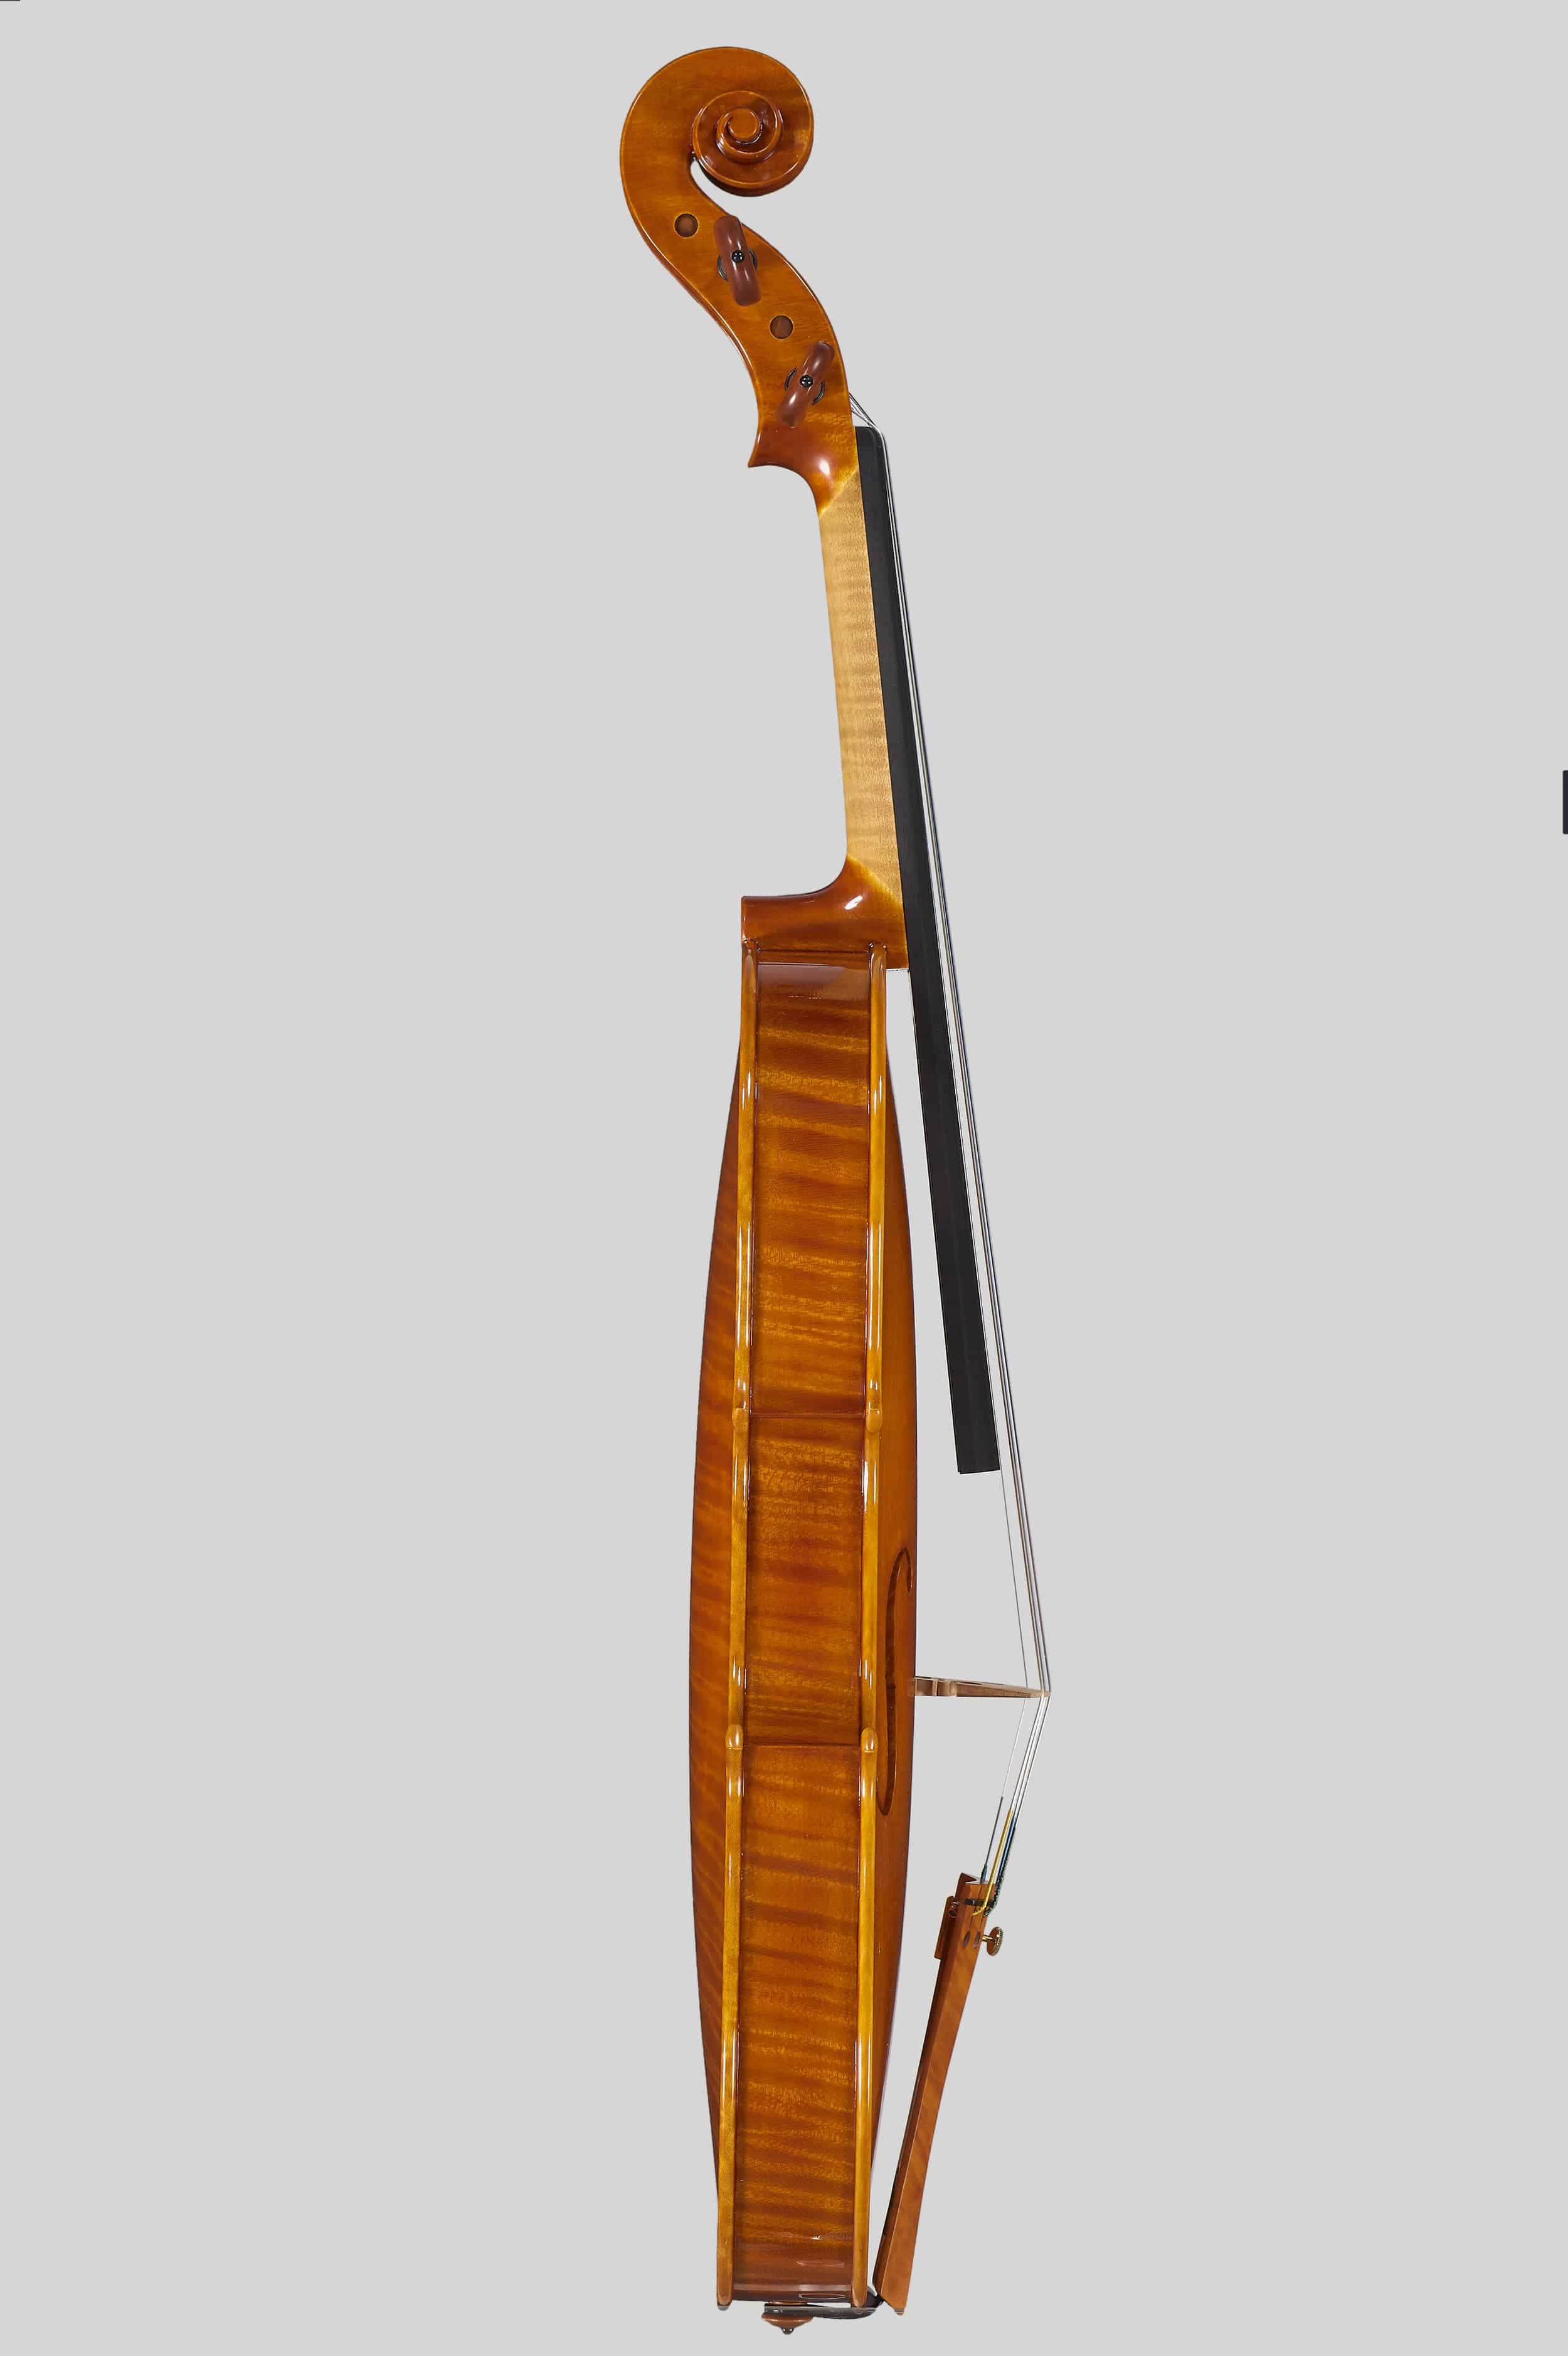 Anno 2017 - Violino modello stile A. Stradivari “Viotti” 1709 - Testa destra